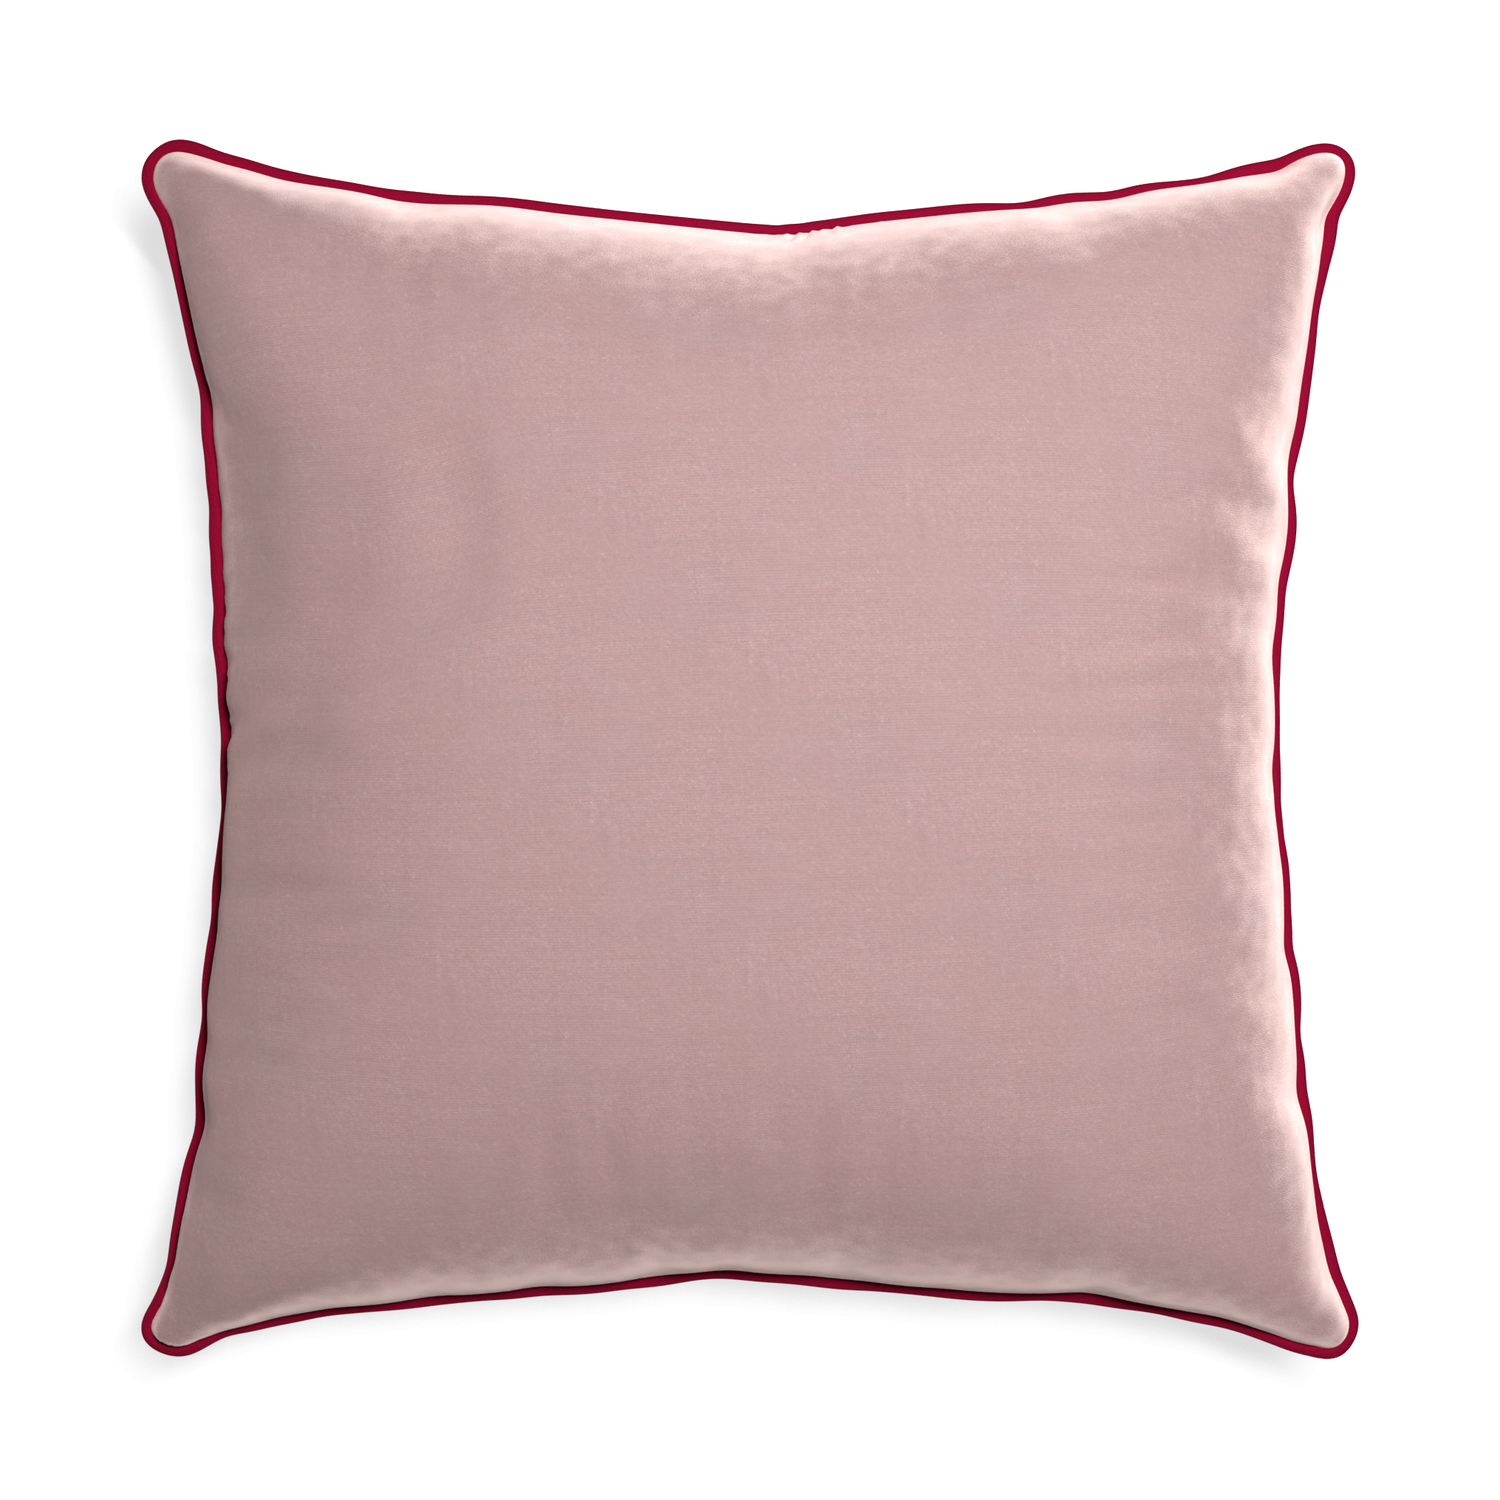 Euro-sham mauve velvet custom pillow with raspberry piping on white background